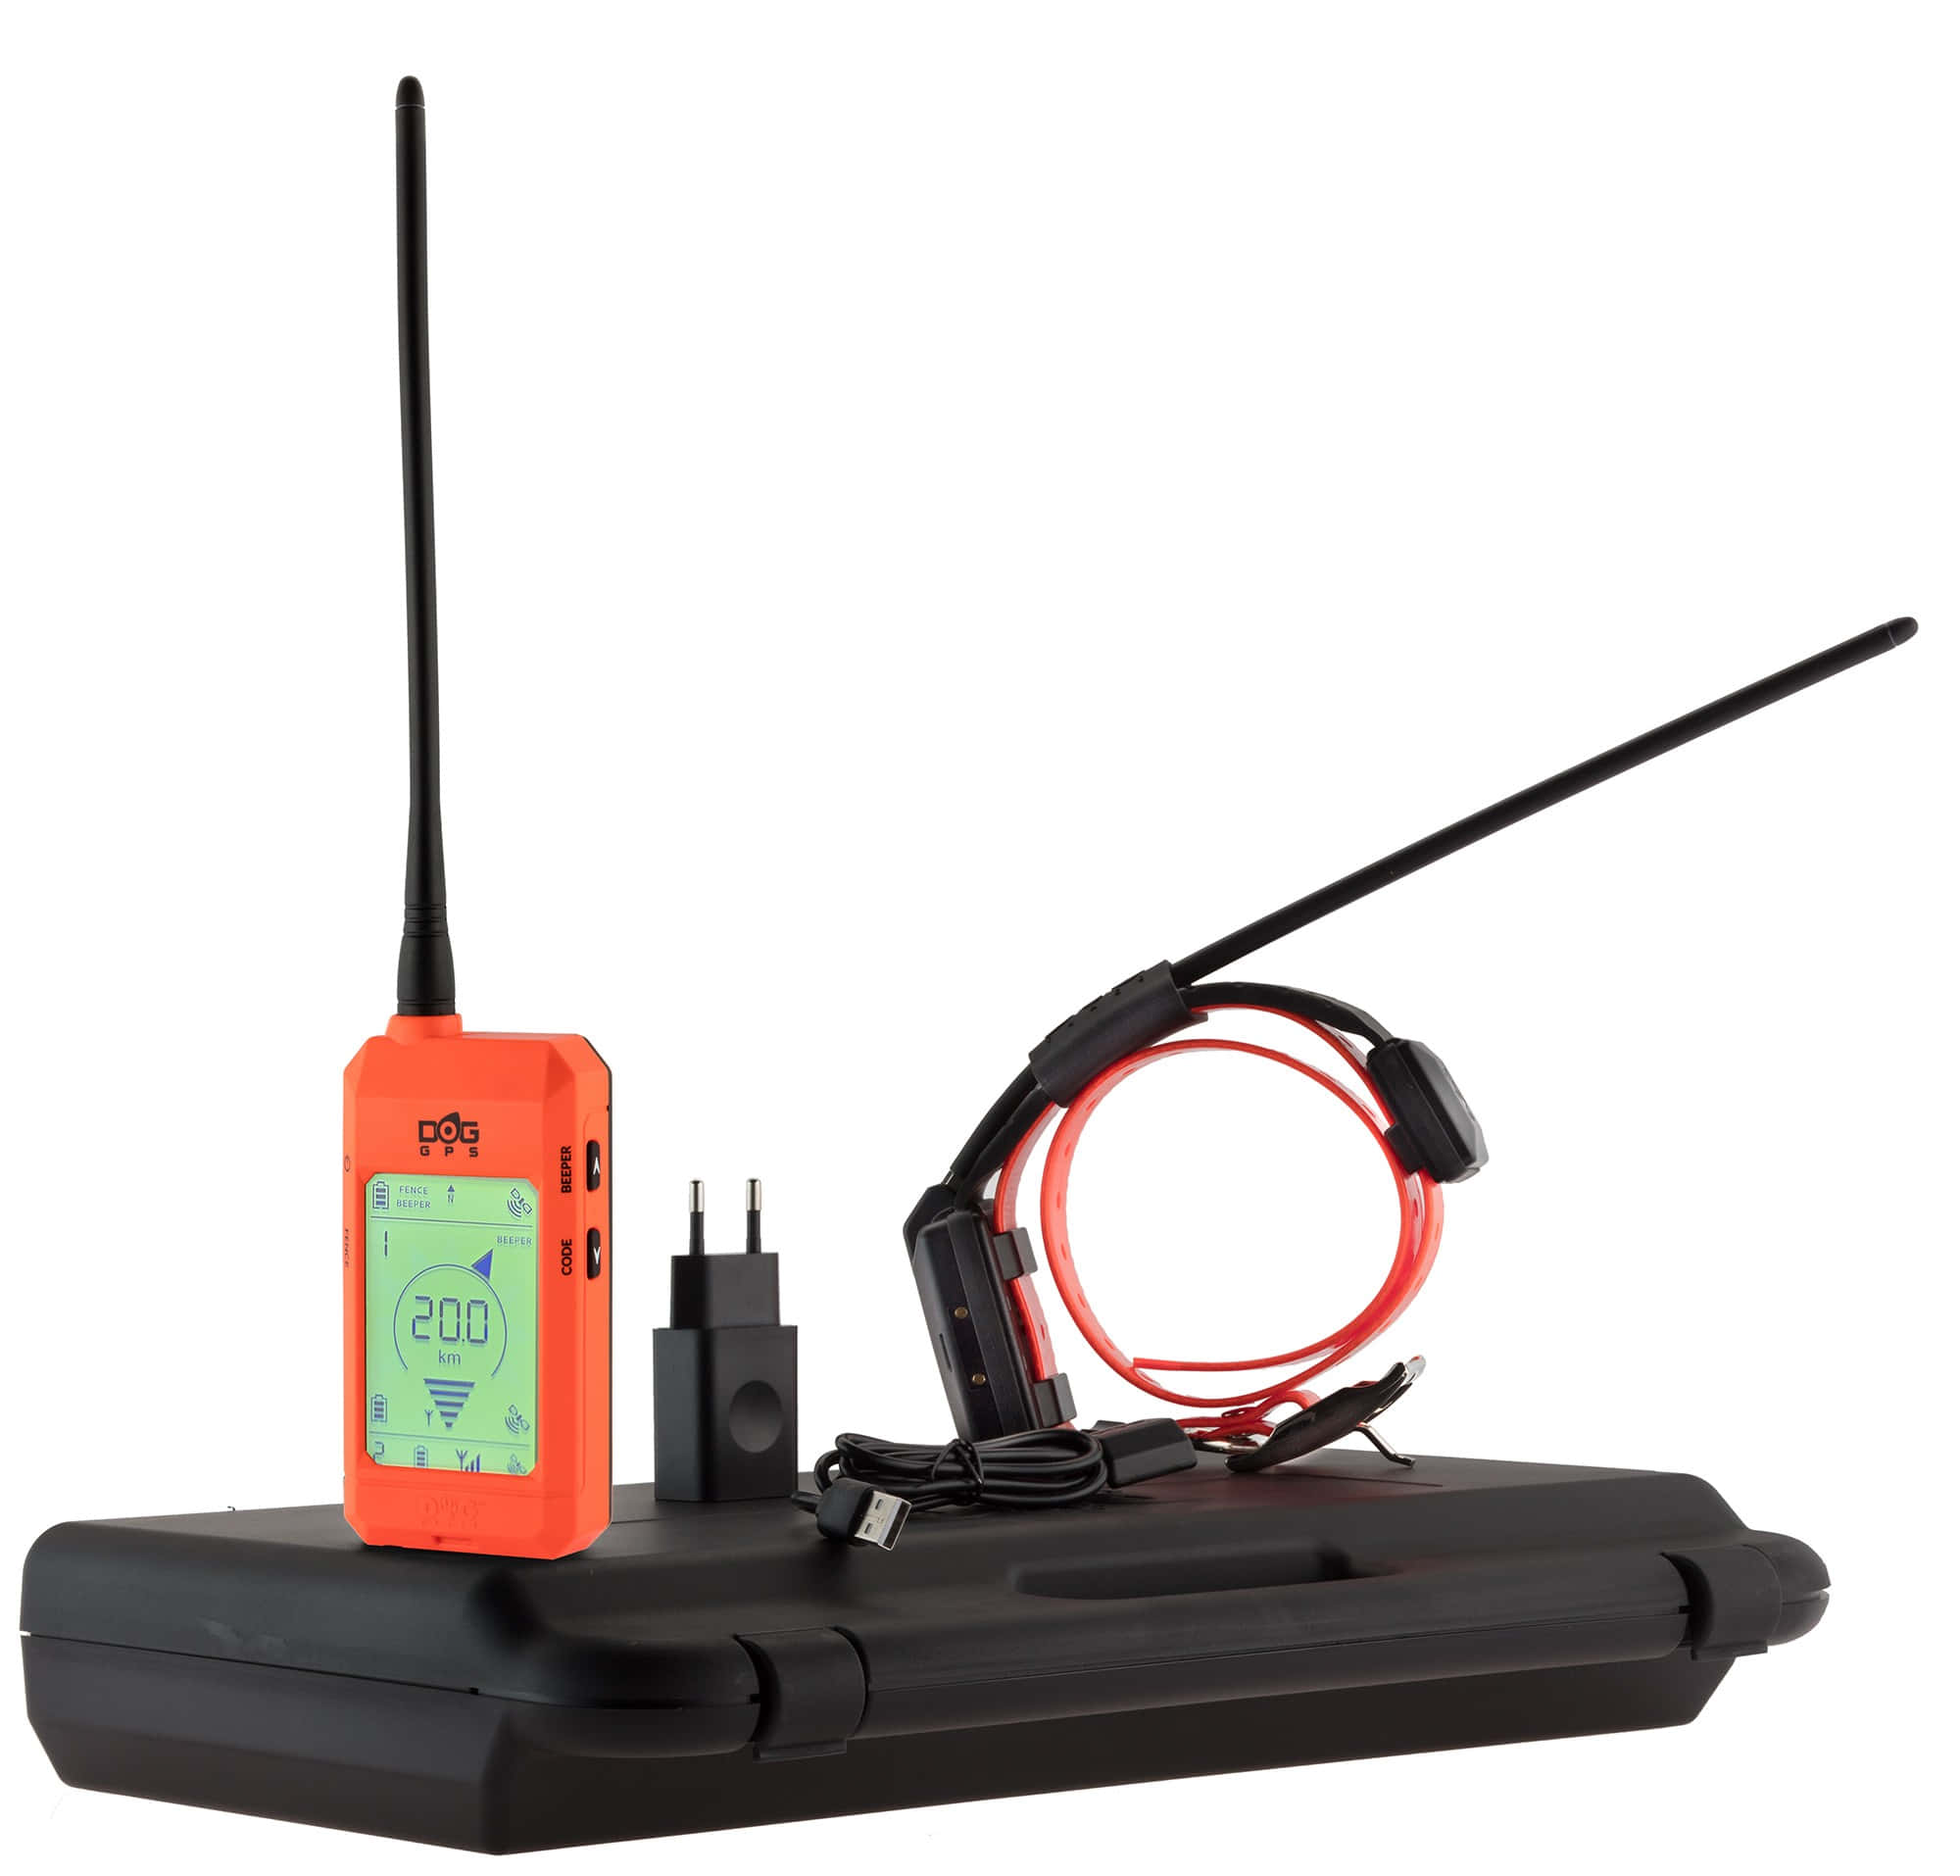 CH963001-17 Collier GPS pour chien sans abonnement DOGTRACE X20 orange fluo